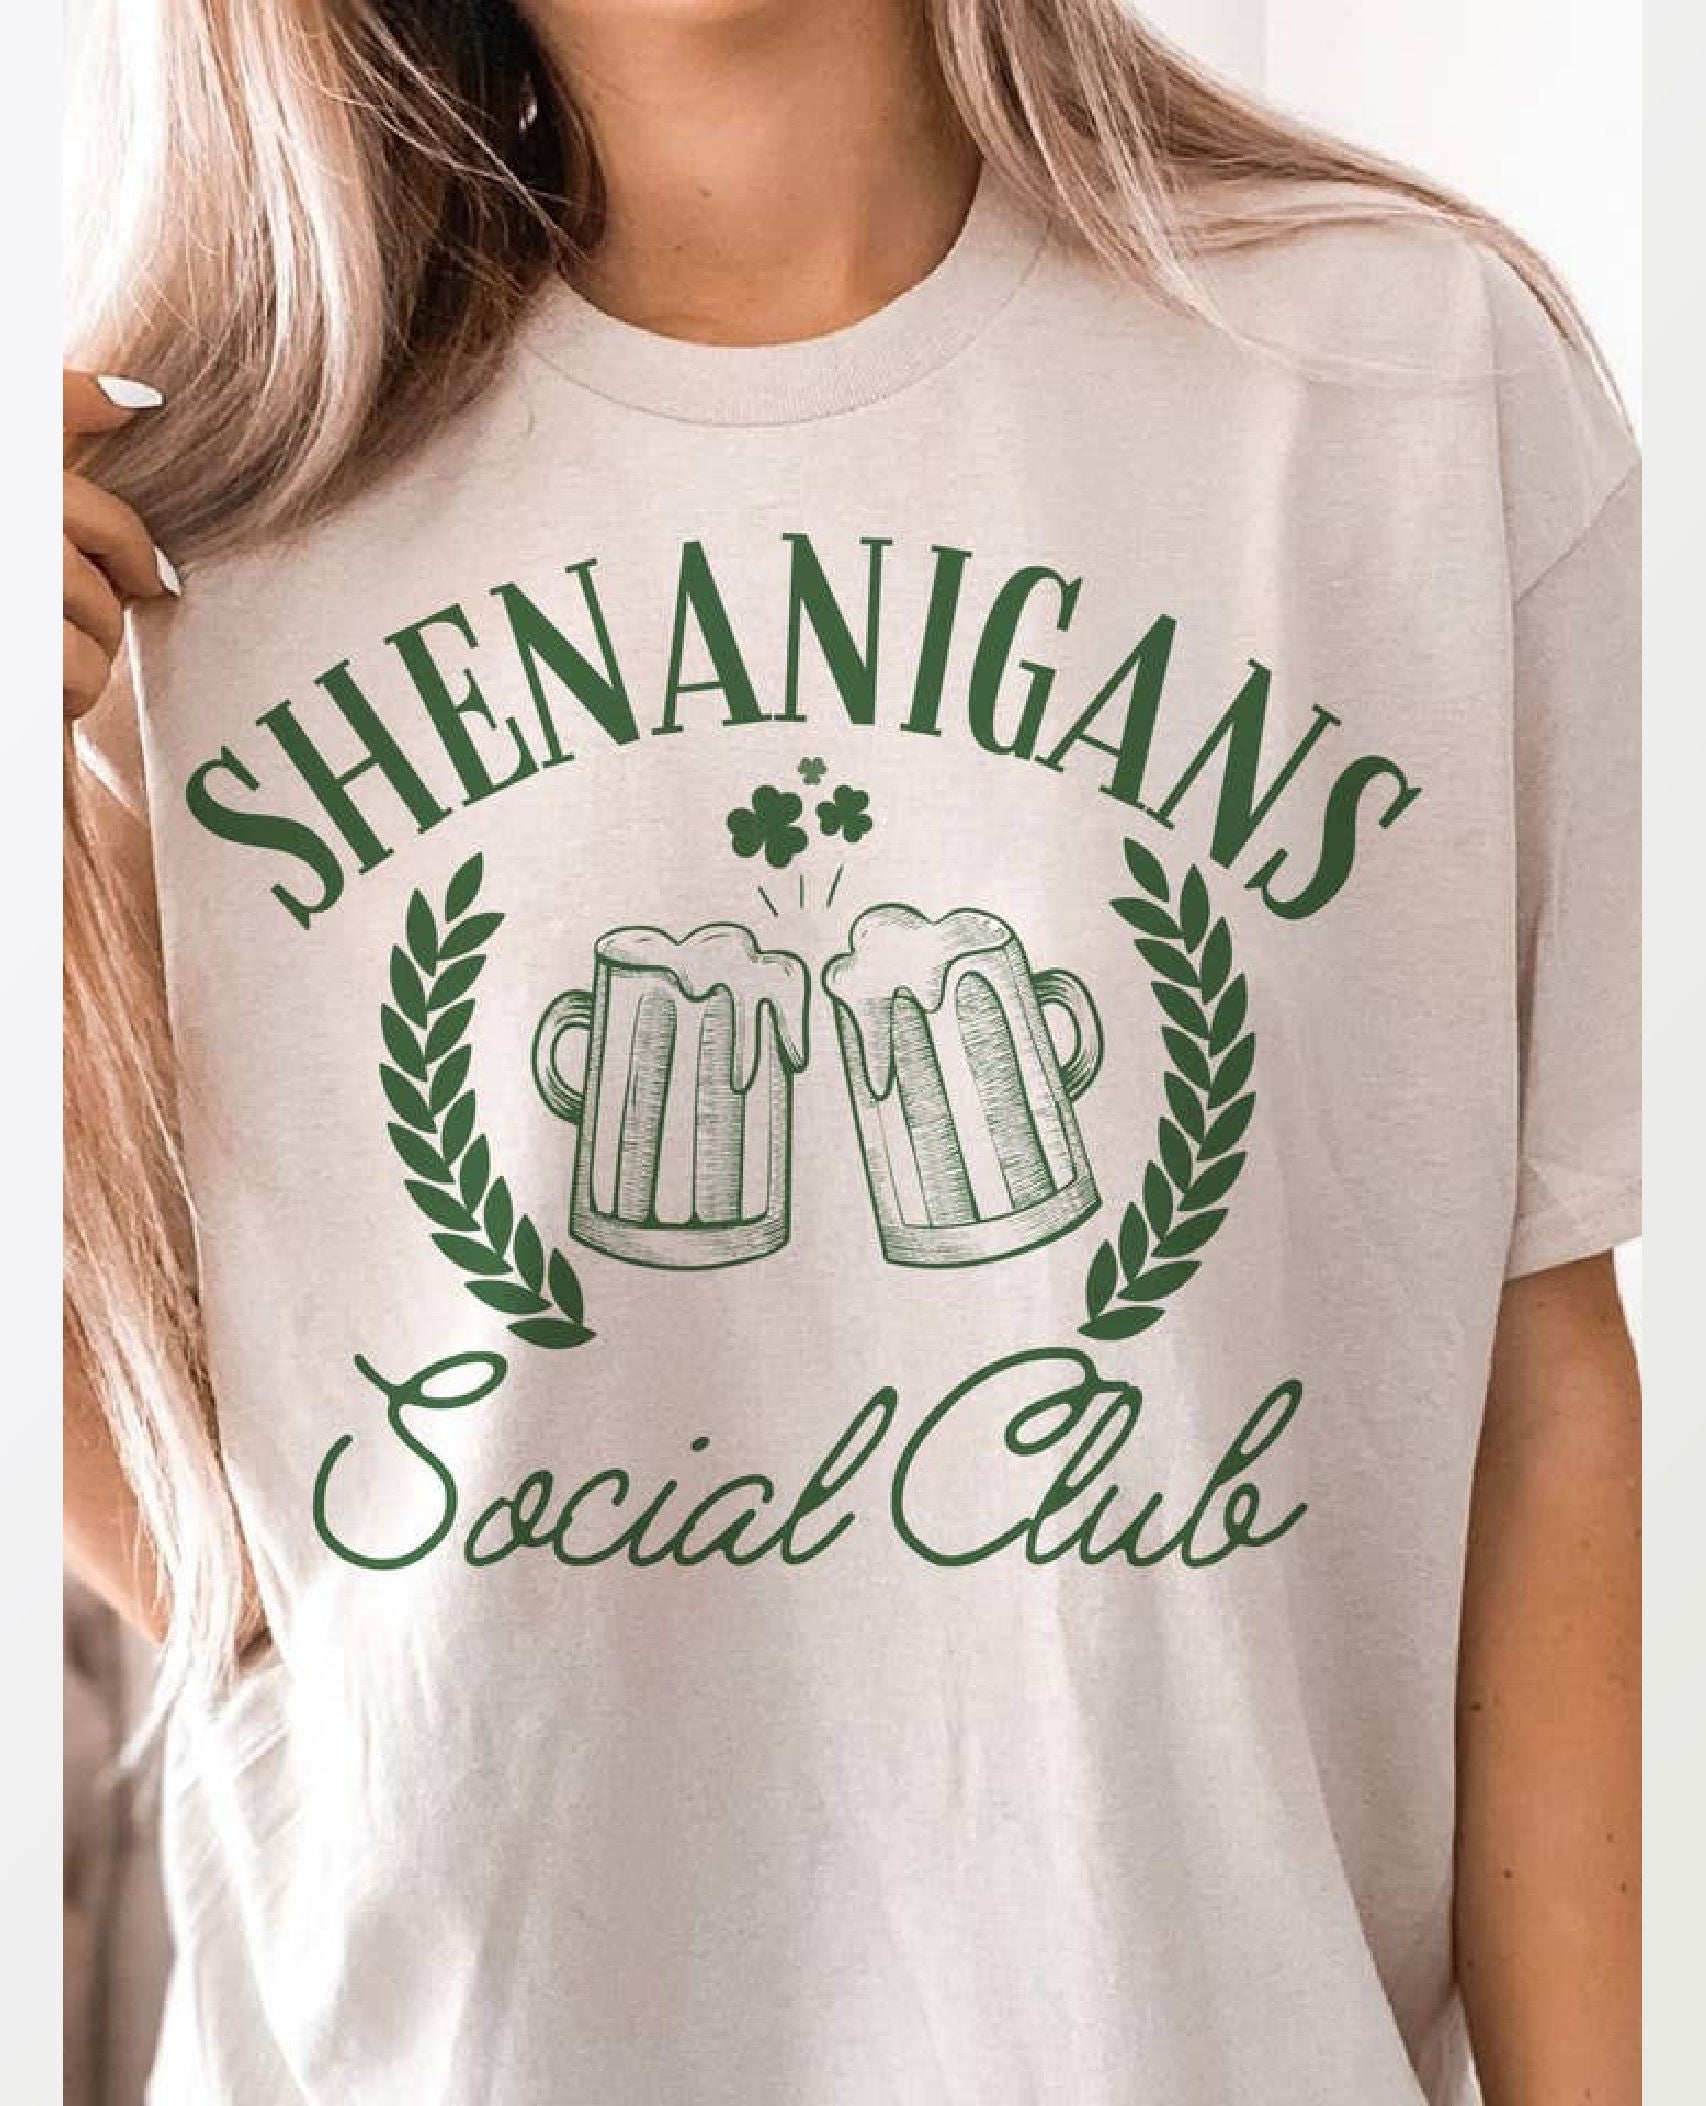 Shenanigans Social Club Tee Shirt